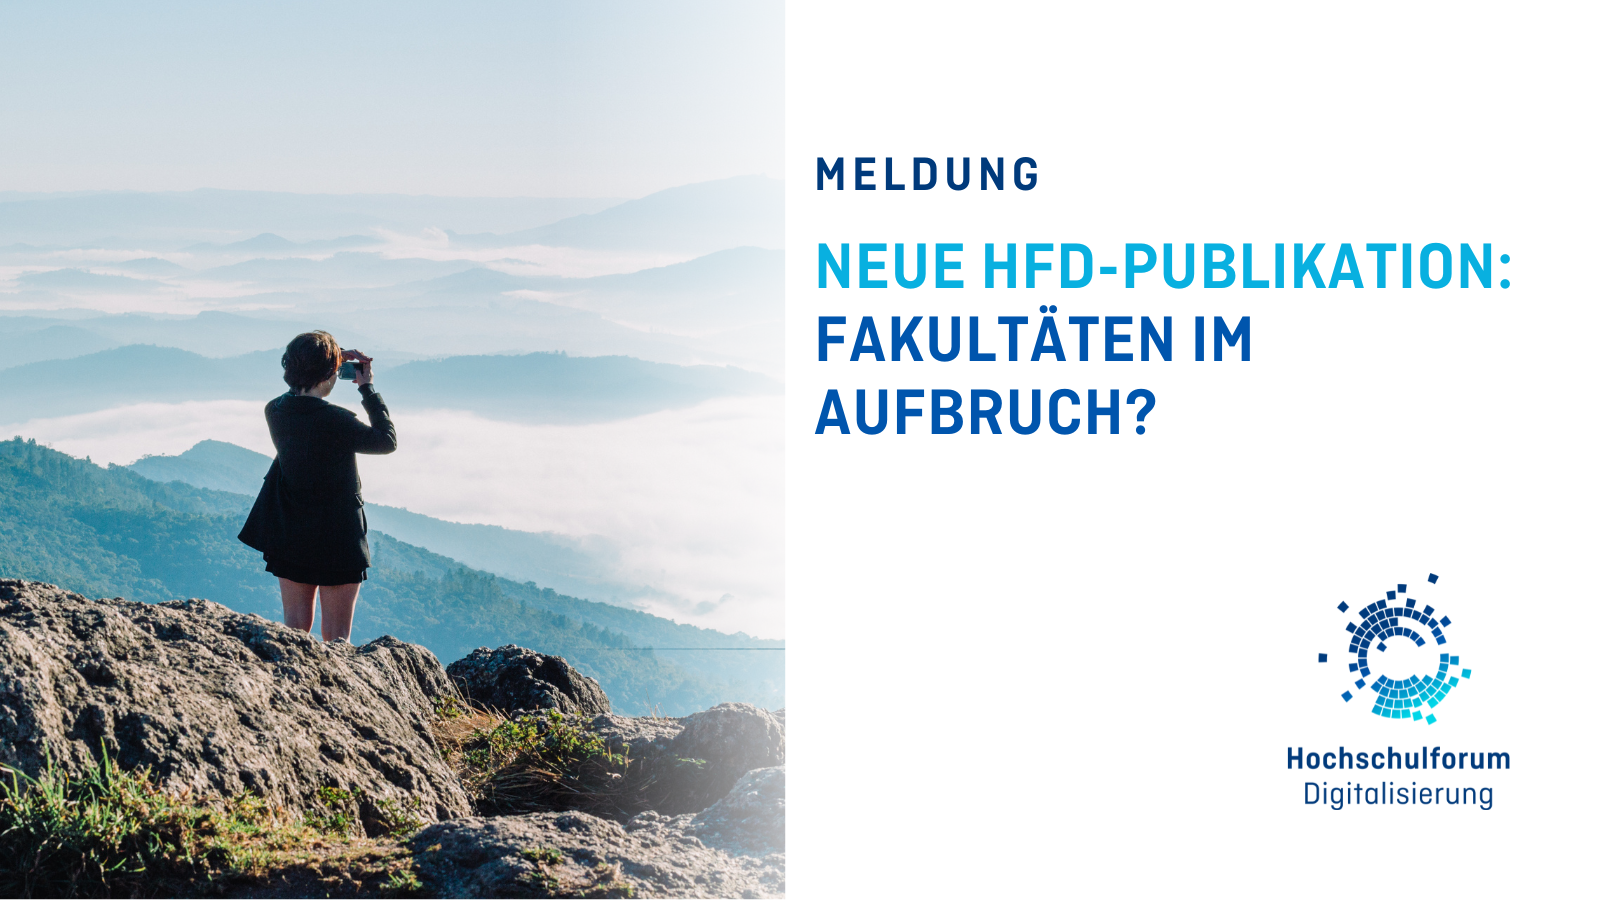 Titelbild zur Meldung: "NEUE HFD-PUBLIKATION: FAKULTÄTEN IM AUFBRUCH? Links auf dem Foto befindet sich eine Person, die auf einem Berg steht und in die Ferne schaut. Logo rechts unten: Hochschulforum Digitalisierung